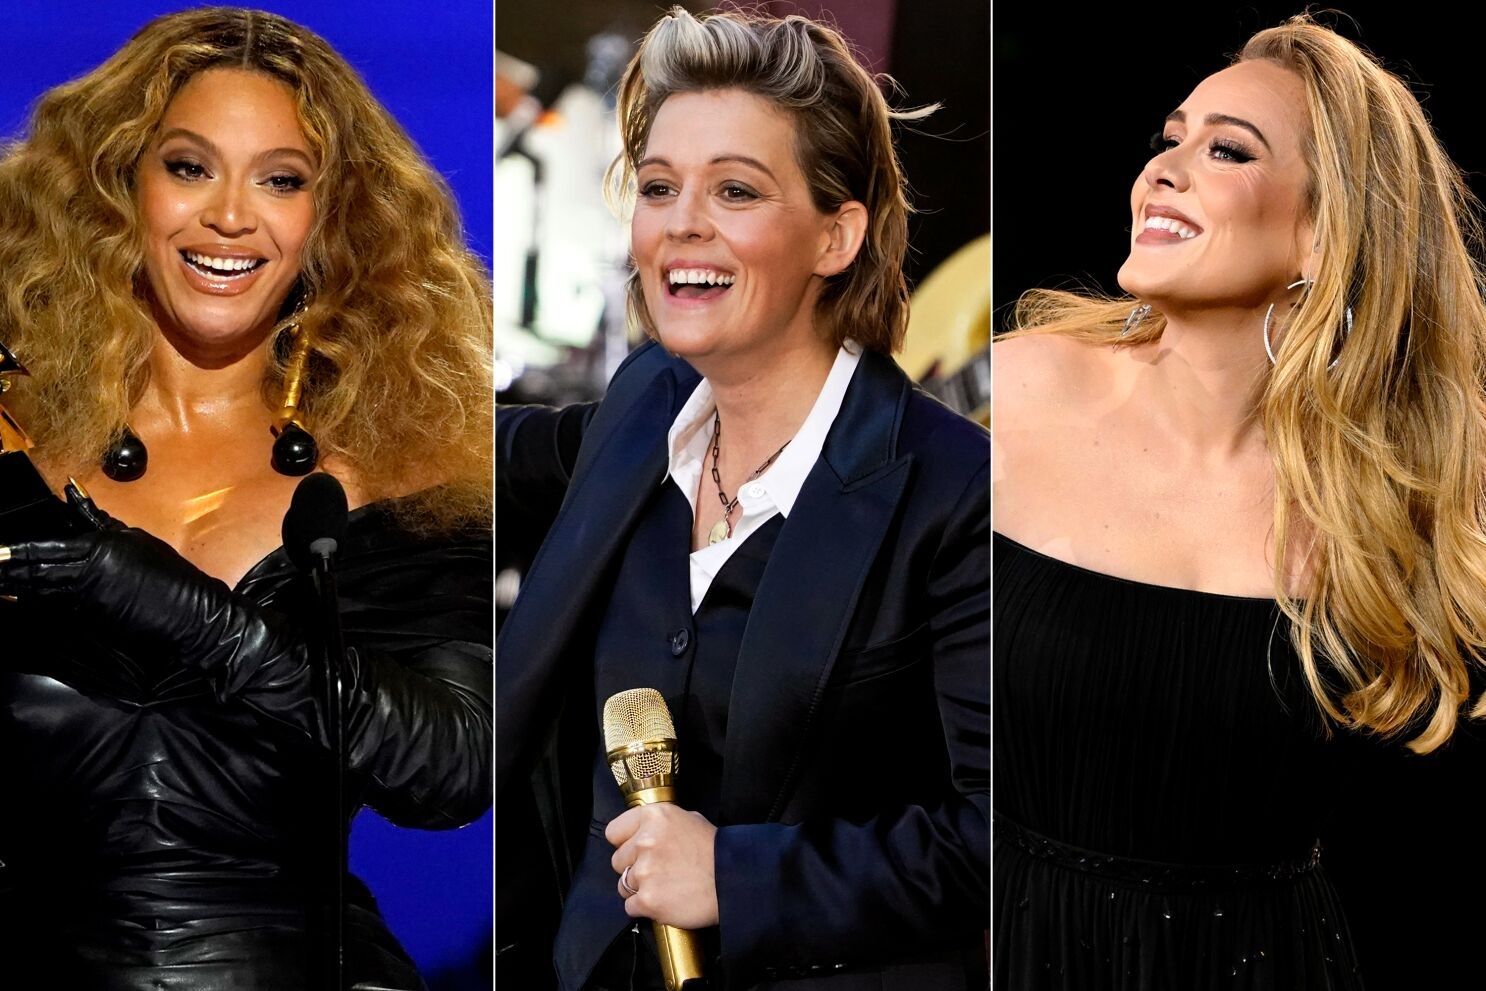 La 65ª entrega de los premios Grammy tendrá lugar el próximo 5 de febrero en Los Ángeles. LOS ANGELES. - Los temas “Easy On Me” de Adele, “Break My Soul” de Beyoncé y “As It Was” de Harry Styles, entre otros, han sido nominados en la categoría a Mejor Grabación del año. Además, Beyoncé (“Renaissance”), Adele (“30″), Bad Bunny (”Un Verano Sin Ti”) y Harry Styles (“Harry´s House”), entre otros, competirán en la categoría a Mejor Álbum del año. Beyoncé lidera con nueve nominaciones, Kendrick Lamar le sigue de cerca con ocho, y Adele y Brandi Carlile con siete. Cuatro contendientes ingresan a la carrera con seis nominaciones cada uno: Future, Harry Styles, Mary J. Blige, DJ Khaled y Randy Merrill. Otros artistas que competirán en las tres categorías principales son Taylor Swift (la versión de 10 minutos”“All Too Well está nominada a canción del año), Doja Cat (candidata por “Woman”), Coldplay, DJ Khaled, Gayle y, haciendo un regreso sorpresa, la reina de los Grammy de los 90, Bonnie Raitt. La música latina no tuvo la presencia que se esperaba en las categorías generales. Bad Bunny fue nominado para lo que muchos consideran el premio mayor, Álbum del año, por su éxito “Un Verano Sin TI”. El músico solo obtuvo dos nominaciones en total. También se pensó que Rosalía podría entrar en una de las categorías principales, pero no fue así, ya que obtuvo solo una nominación. Anitta competirá como Mejor Artista nuevo. Las nueve nominaciones de Beyoncé la colocan en un empate en las nominaciones al Grammy de todos los tiempos con su esposo, Jay-Z. Estos son algunos de los nominados, entre ellos las categorías de música latina: Mejor interpretación pop solista: •	Easy On Me, Adele •	Moscow Mule, Bad Bunny •	Woman, Doja Cat •	Bad Habit, Steve Lacy •	About Damn Time, Lizzo •	As It Was, Harry Styles Mejor Álbum Vocal Pop Tradicional: •	Higher, Michael Bublé •	When Christmas Comes Around…, Kelly Clarkson •	I Dream of Christmas (Extended), Norah Jones •	Evergreen, Pentatonix •	Thank You, Diana Ross Mejor canción del año: •	abcdefu, Gayle •	About Damn Time, Lizzo •	All Too Well , Liz Rose y Taylor Swift •	As It Was, Tyler Johnson, Kid Harpoon y Harry Styles •	Bad Habit, Matthew Castellanos, Brittany Fousheé, Diana Gordon, John Carroll Kirby y Steve Lacy. •	Break My Soul, Beyoncé, S. Carter, Terius “The-Dream” Gesteelde-Diamant y Christopher A. Stewart •	Easy on Me, Adele Adkins y Greg Kurstin •	God Did, Tarik Azzouz, E. Blackmon, Khaled Khaled, F. LeBlanc, Shawn Carter, John Stephens, Dwayne Carter, William Roberts y Nicholas Warwar •	The Heart Part 5, Jake Kosich, Johnny Kosich, Kendrick Lamar y Matt Schaeffer •	Just Like That, Bonnie Raitt Mejor Álbum Pop Latino: •	Aguilera, Christina Aguilera •	Pasieros, Rubén Blades y Boca Livre •	De Adentro Pa Afuera, Camilo •	Viajante, Fonseca •	Dharma +, Sebastián Yatra Mejor Álbum Latino Tropical: •	Pa’lla Voy, Marc Anthony •	Quiero Verte Feliz, La Santa Cecilia •	Lado A Lado B, Víctor Manuelle •	Legendario, Tito Nieves •	Imágenes Latinas, Spanish Harlem Orchestra •	Cumbiana II, Carlos Vives